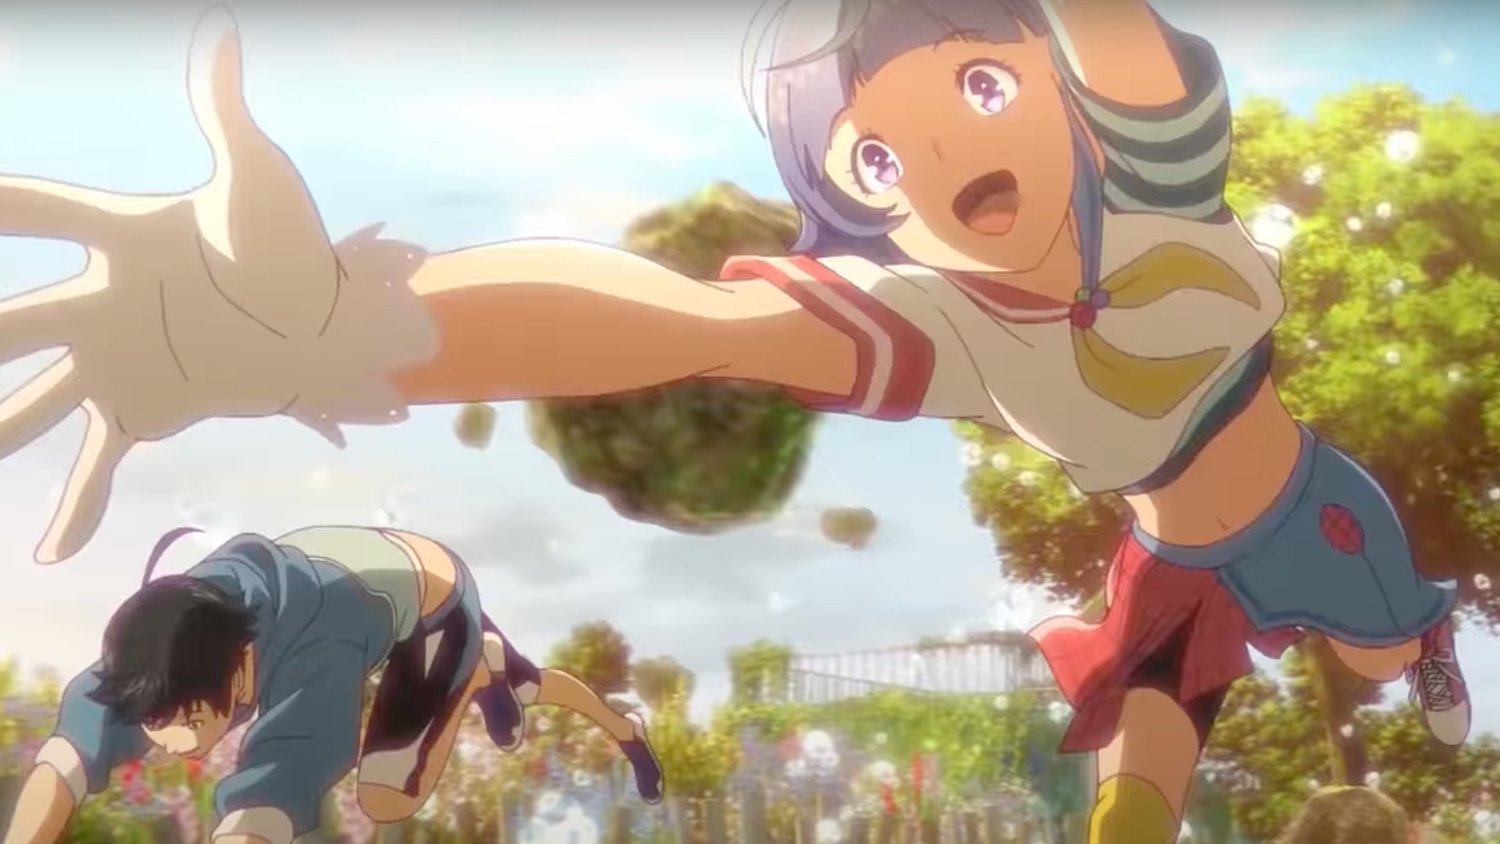 Bubble – Anime original de ação e fantasia ganha trailer musical